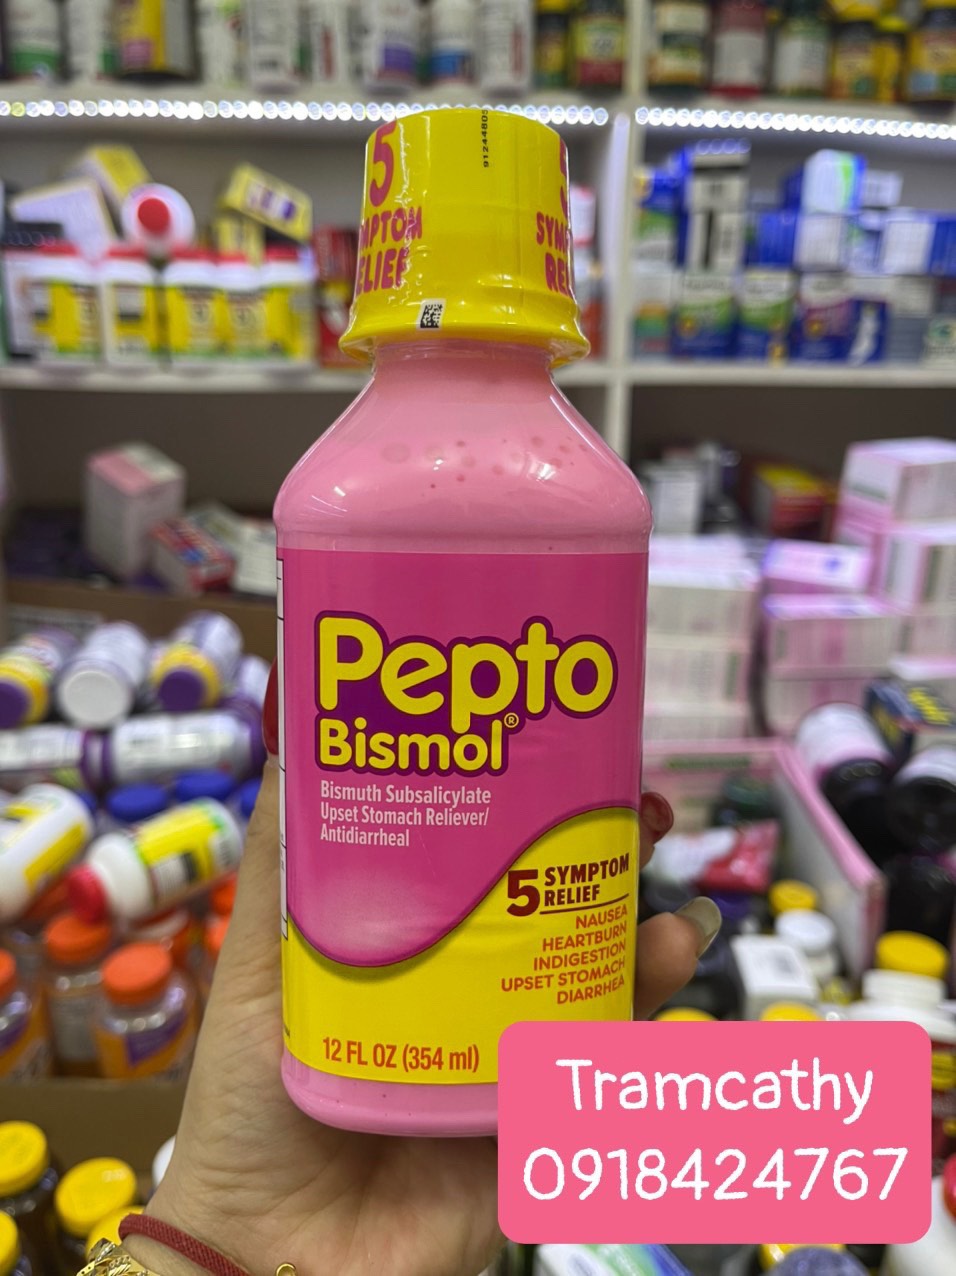  Thuốc chuyên trị tiêu hóa dạ dày Pepto Bismol